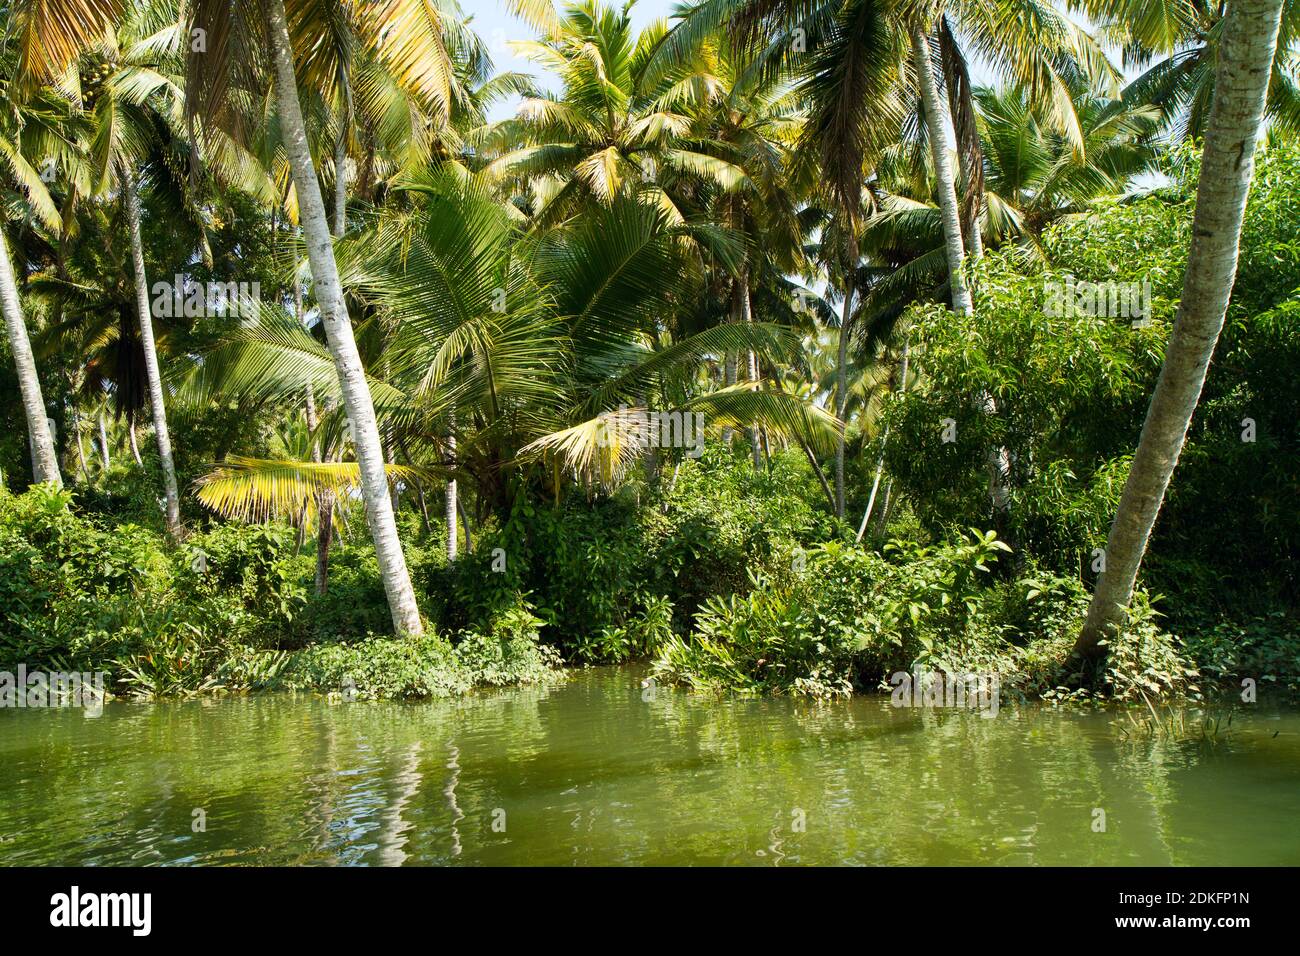 Paesaggio di Kerala backwaters - una catena di lagune salmastre e laghi che si trovano parallelamente alla costa del Mar Arabico in Kerala, India meridionale Foto Stock